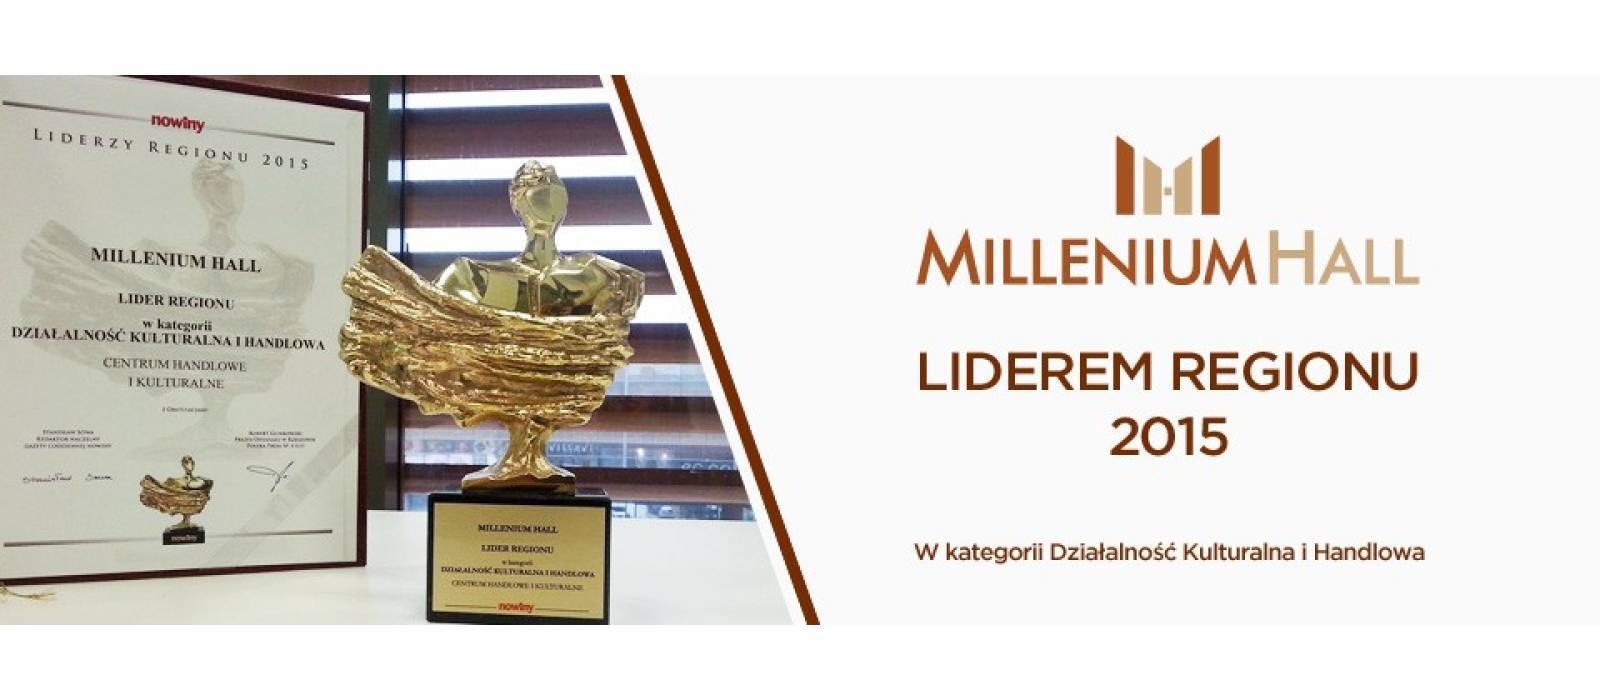 Millenium Hall Liderem Regionu 2015! - 1